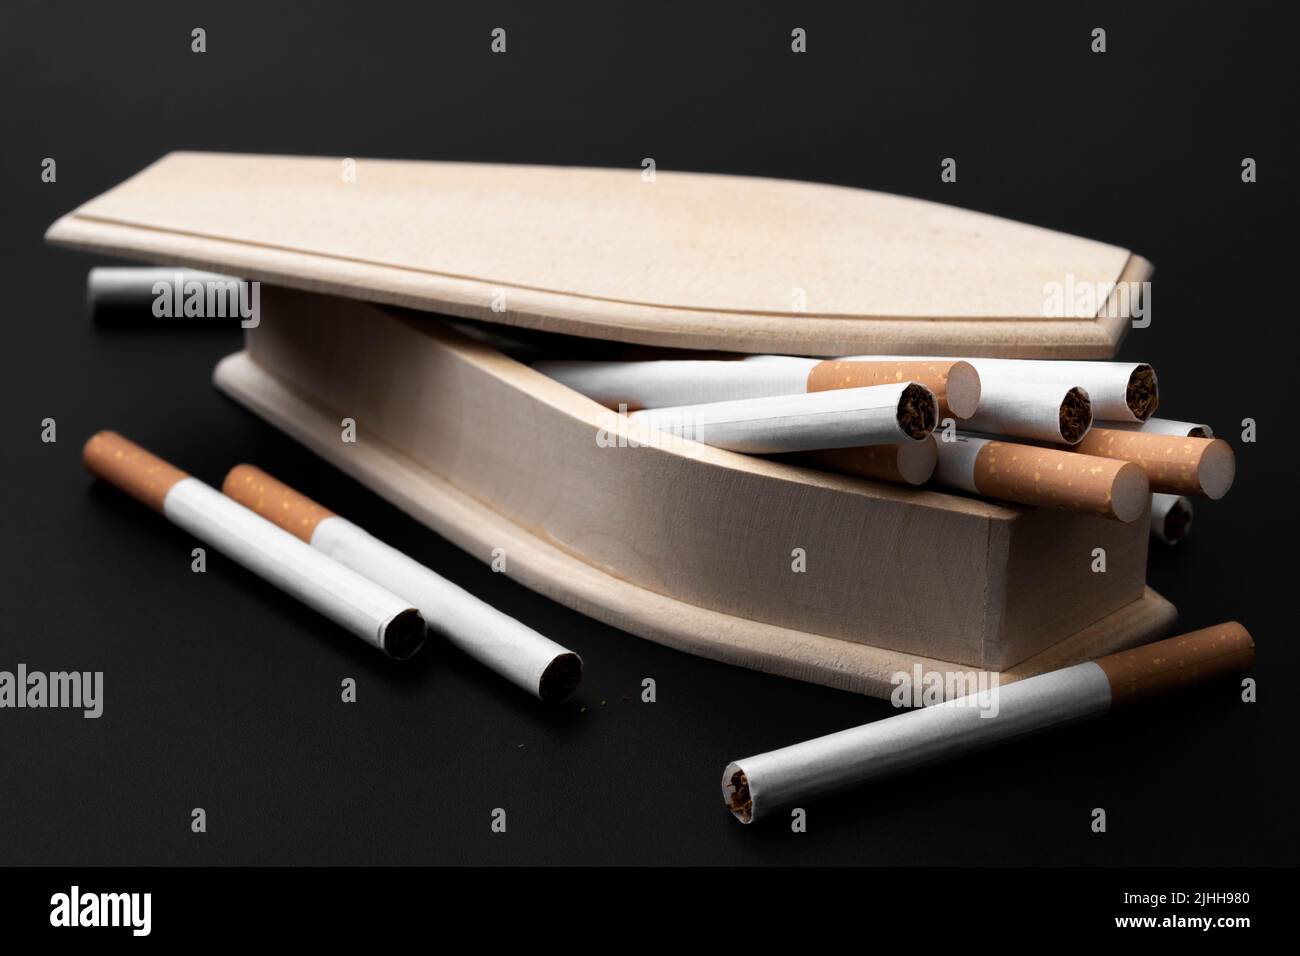 Moody immagine di vera bara di legno riempito di sigarette nel concetto di oscurità per smettere di fumare per prevenire la morte, cancro ai polmoni consapevolezza e sigarette kil Foto Stock